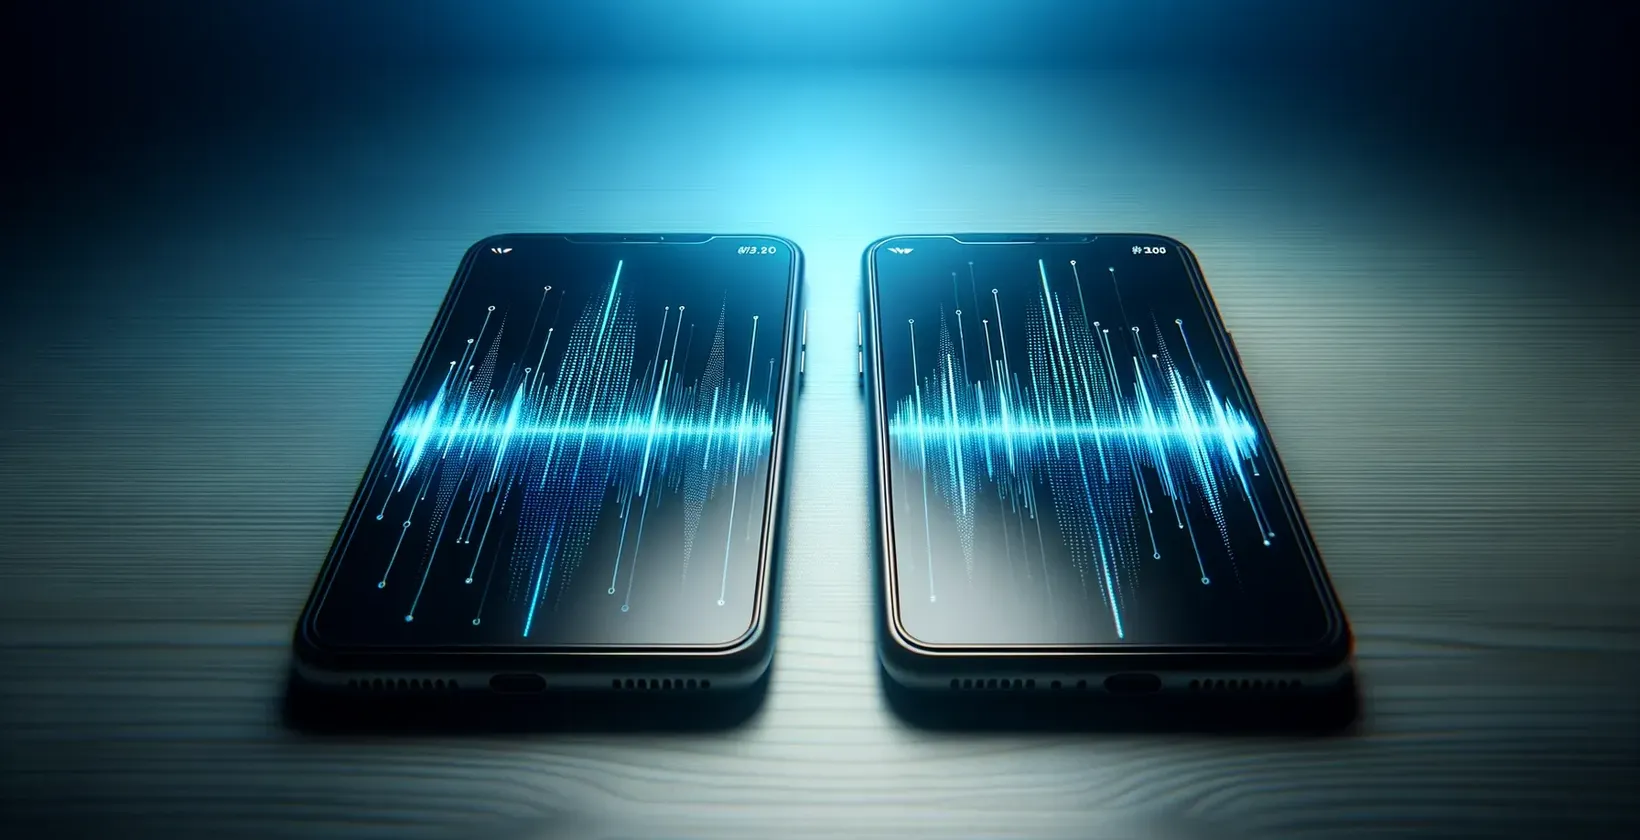 Smartphones affichant des formes d'ondes numériques dynamiques, représentant les capacités des logiciels de transcription